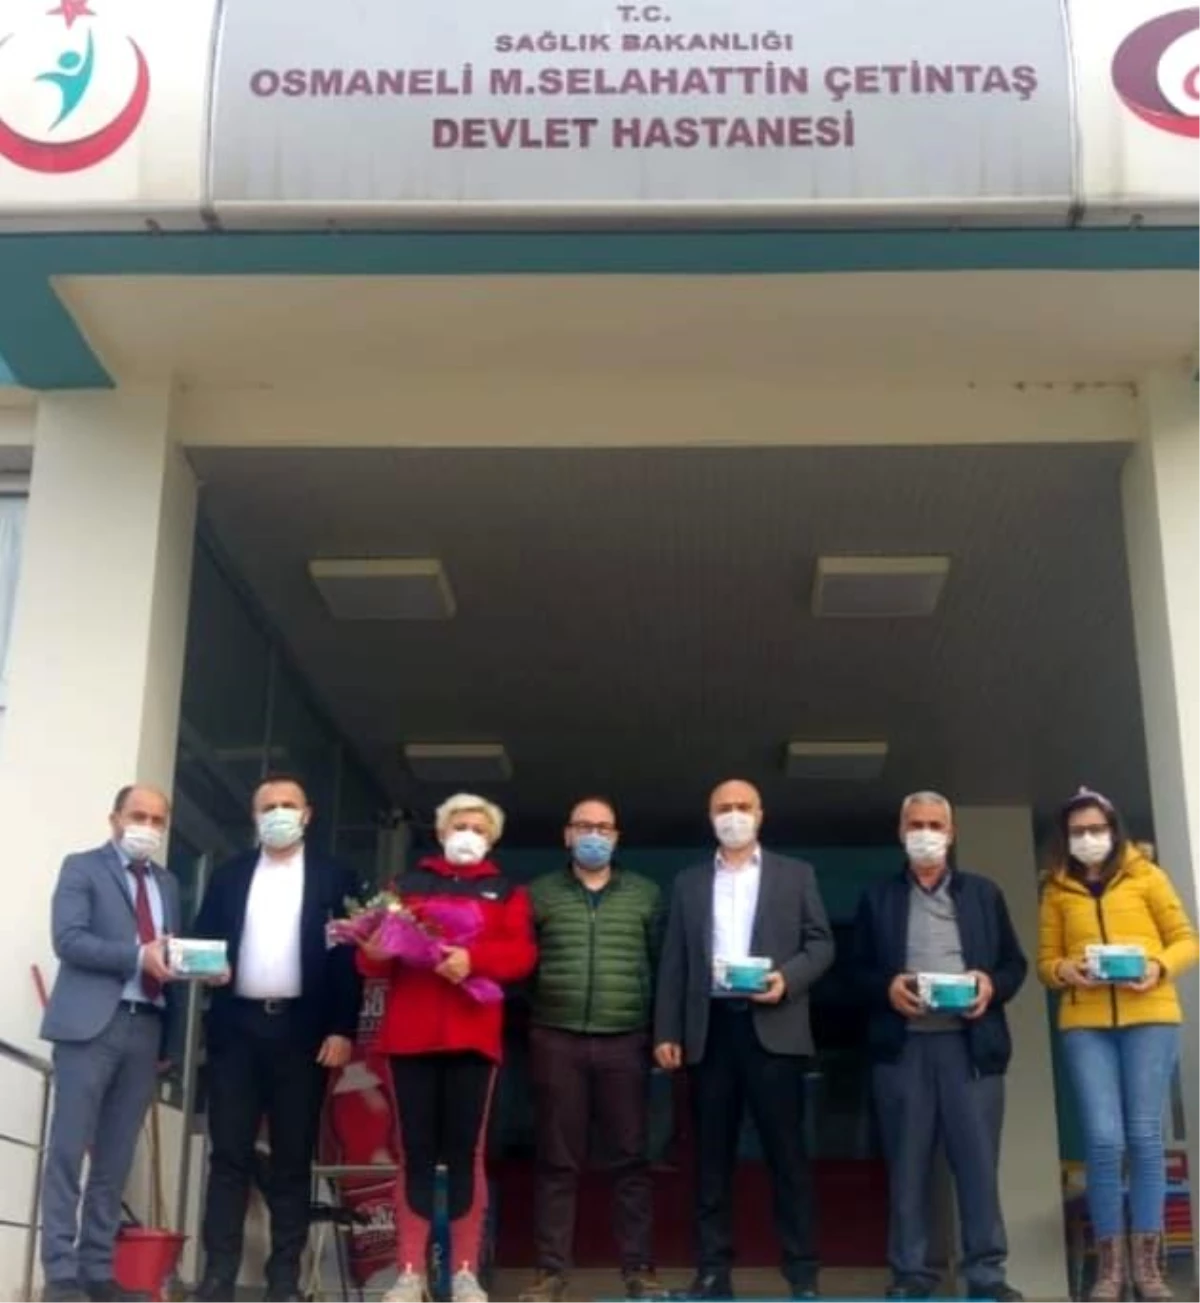 İYİ Parti İlçe teşkilatından hastaneye cihaz bağışı